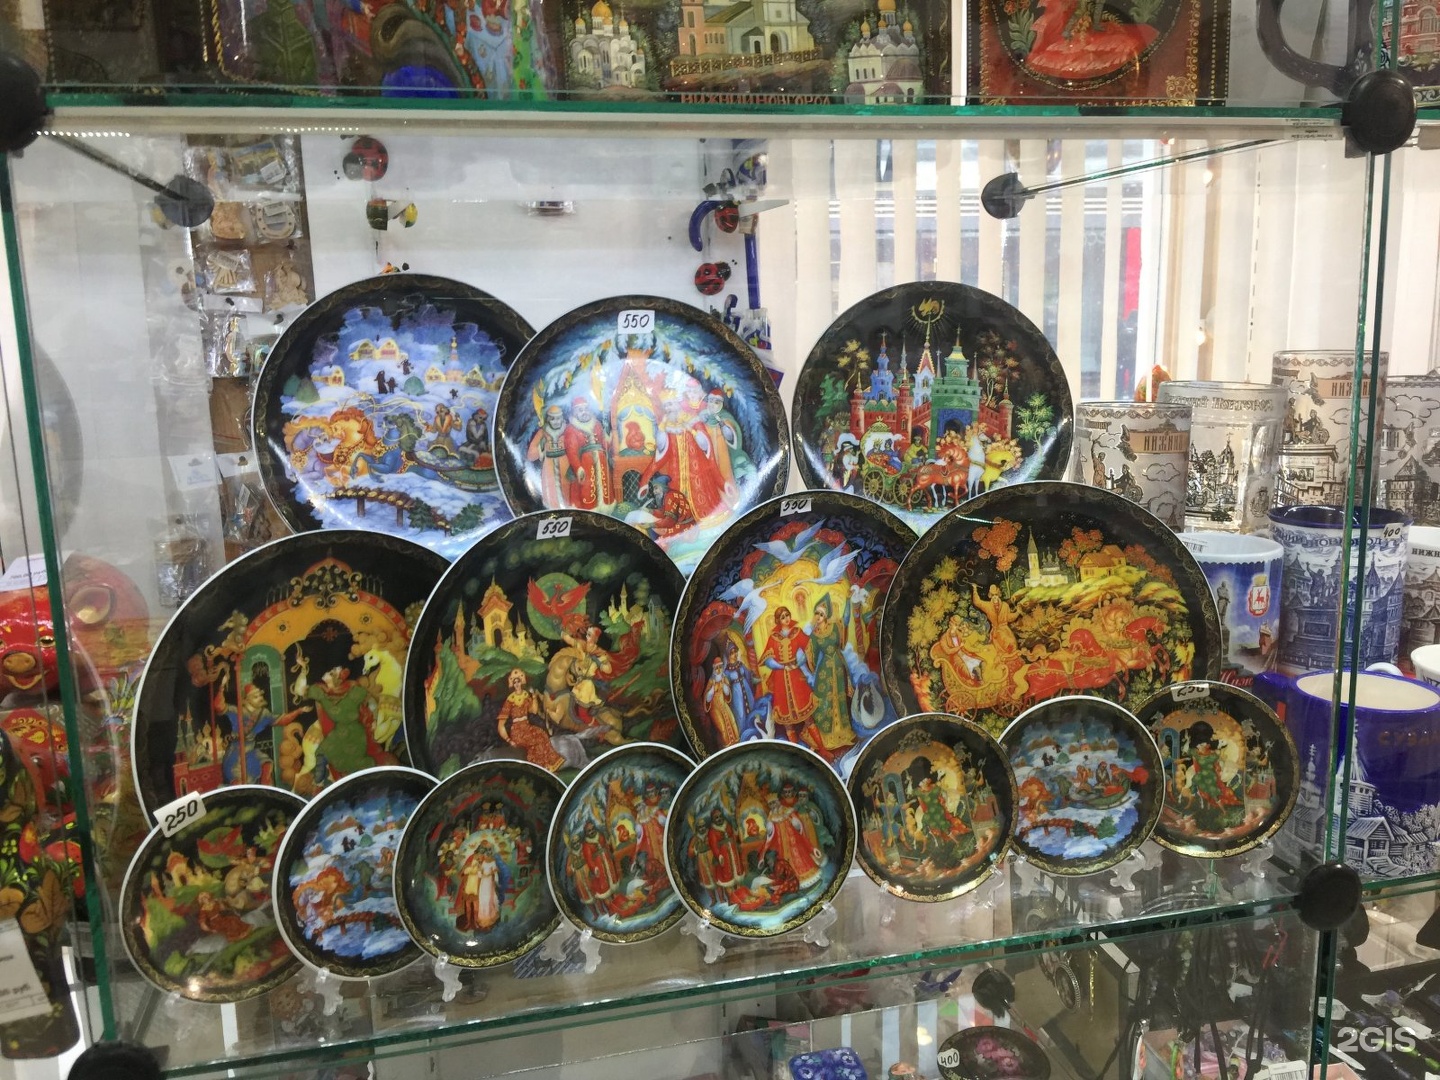 Где Купить Сувениры В Нижнем Новгороде